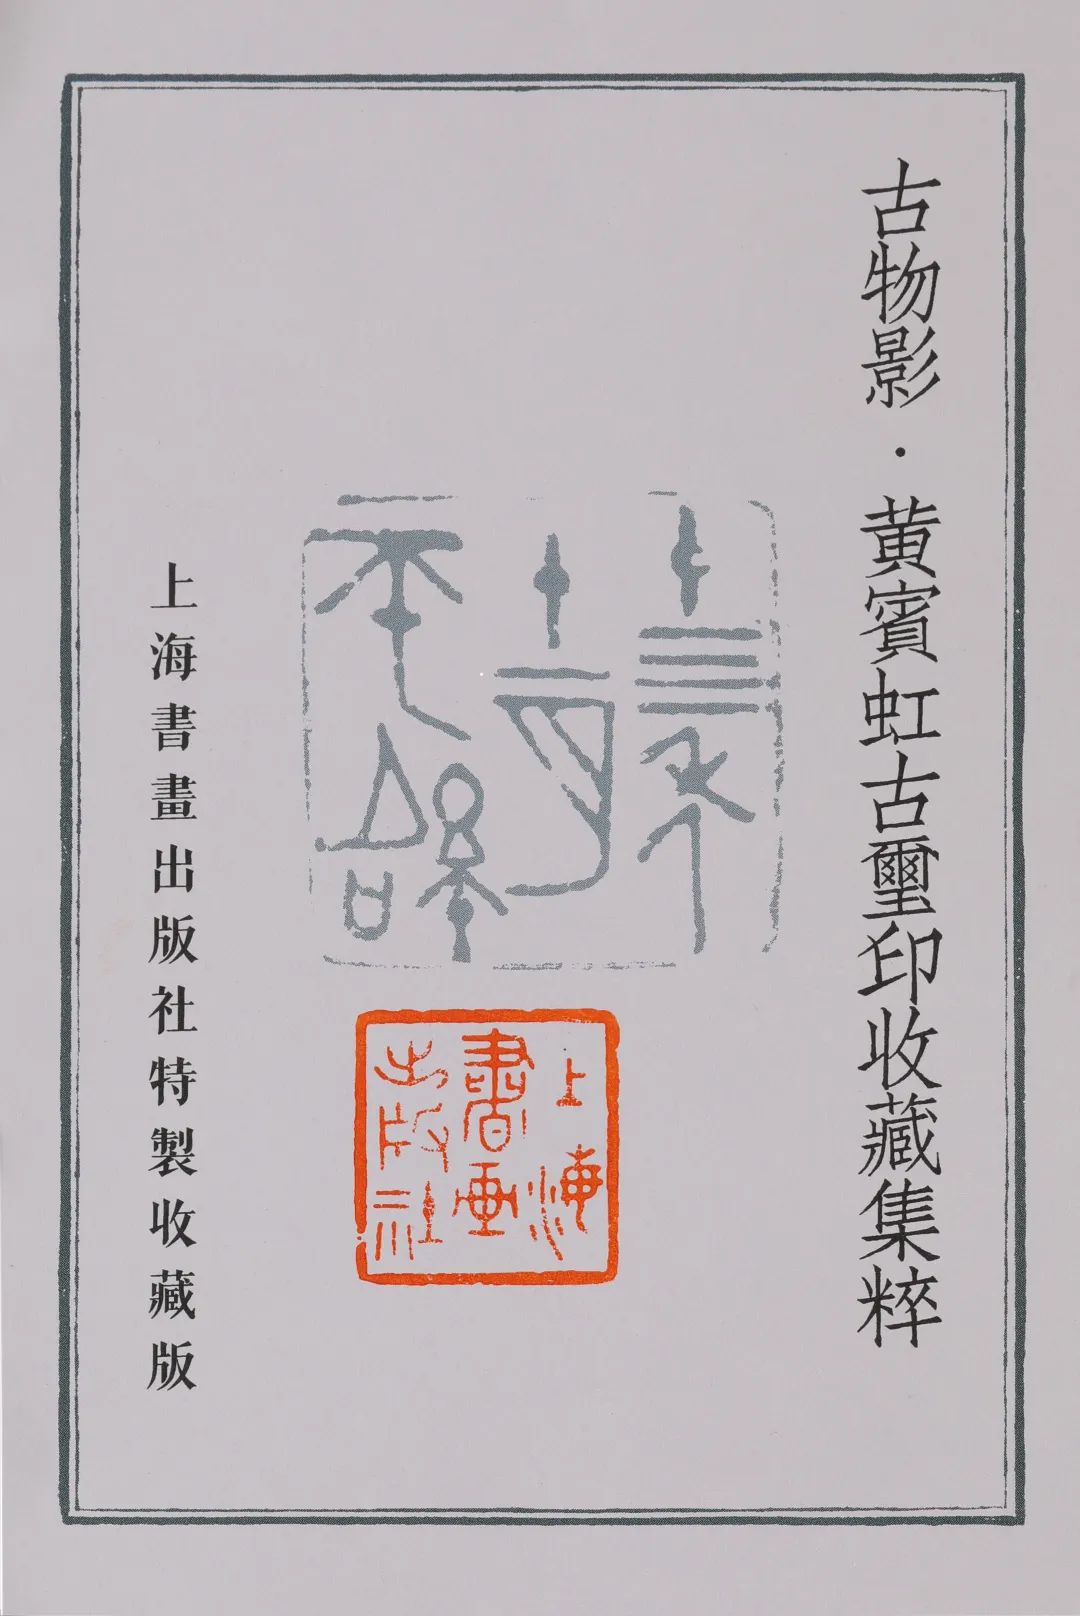 国内最具学术与艺术价值的玺印收藏集合体之一《古物影——黄宾虹古玺印收藏集萃》(图164)